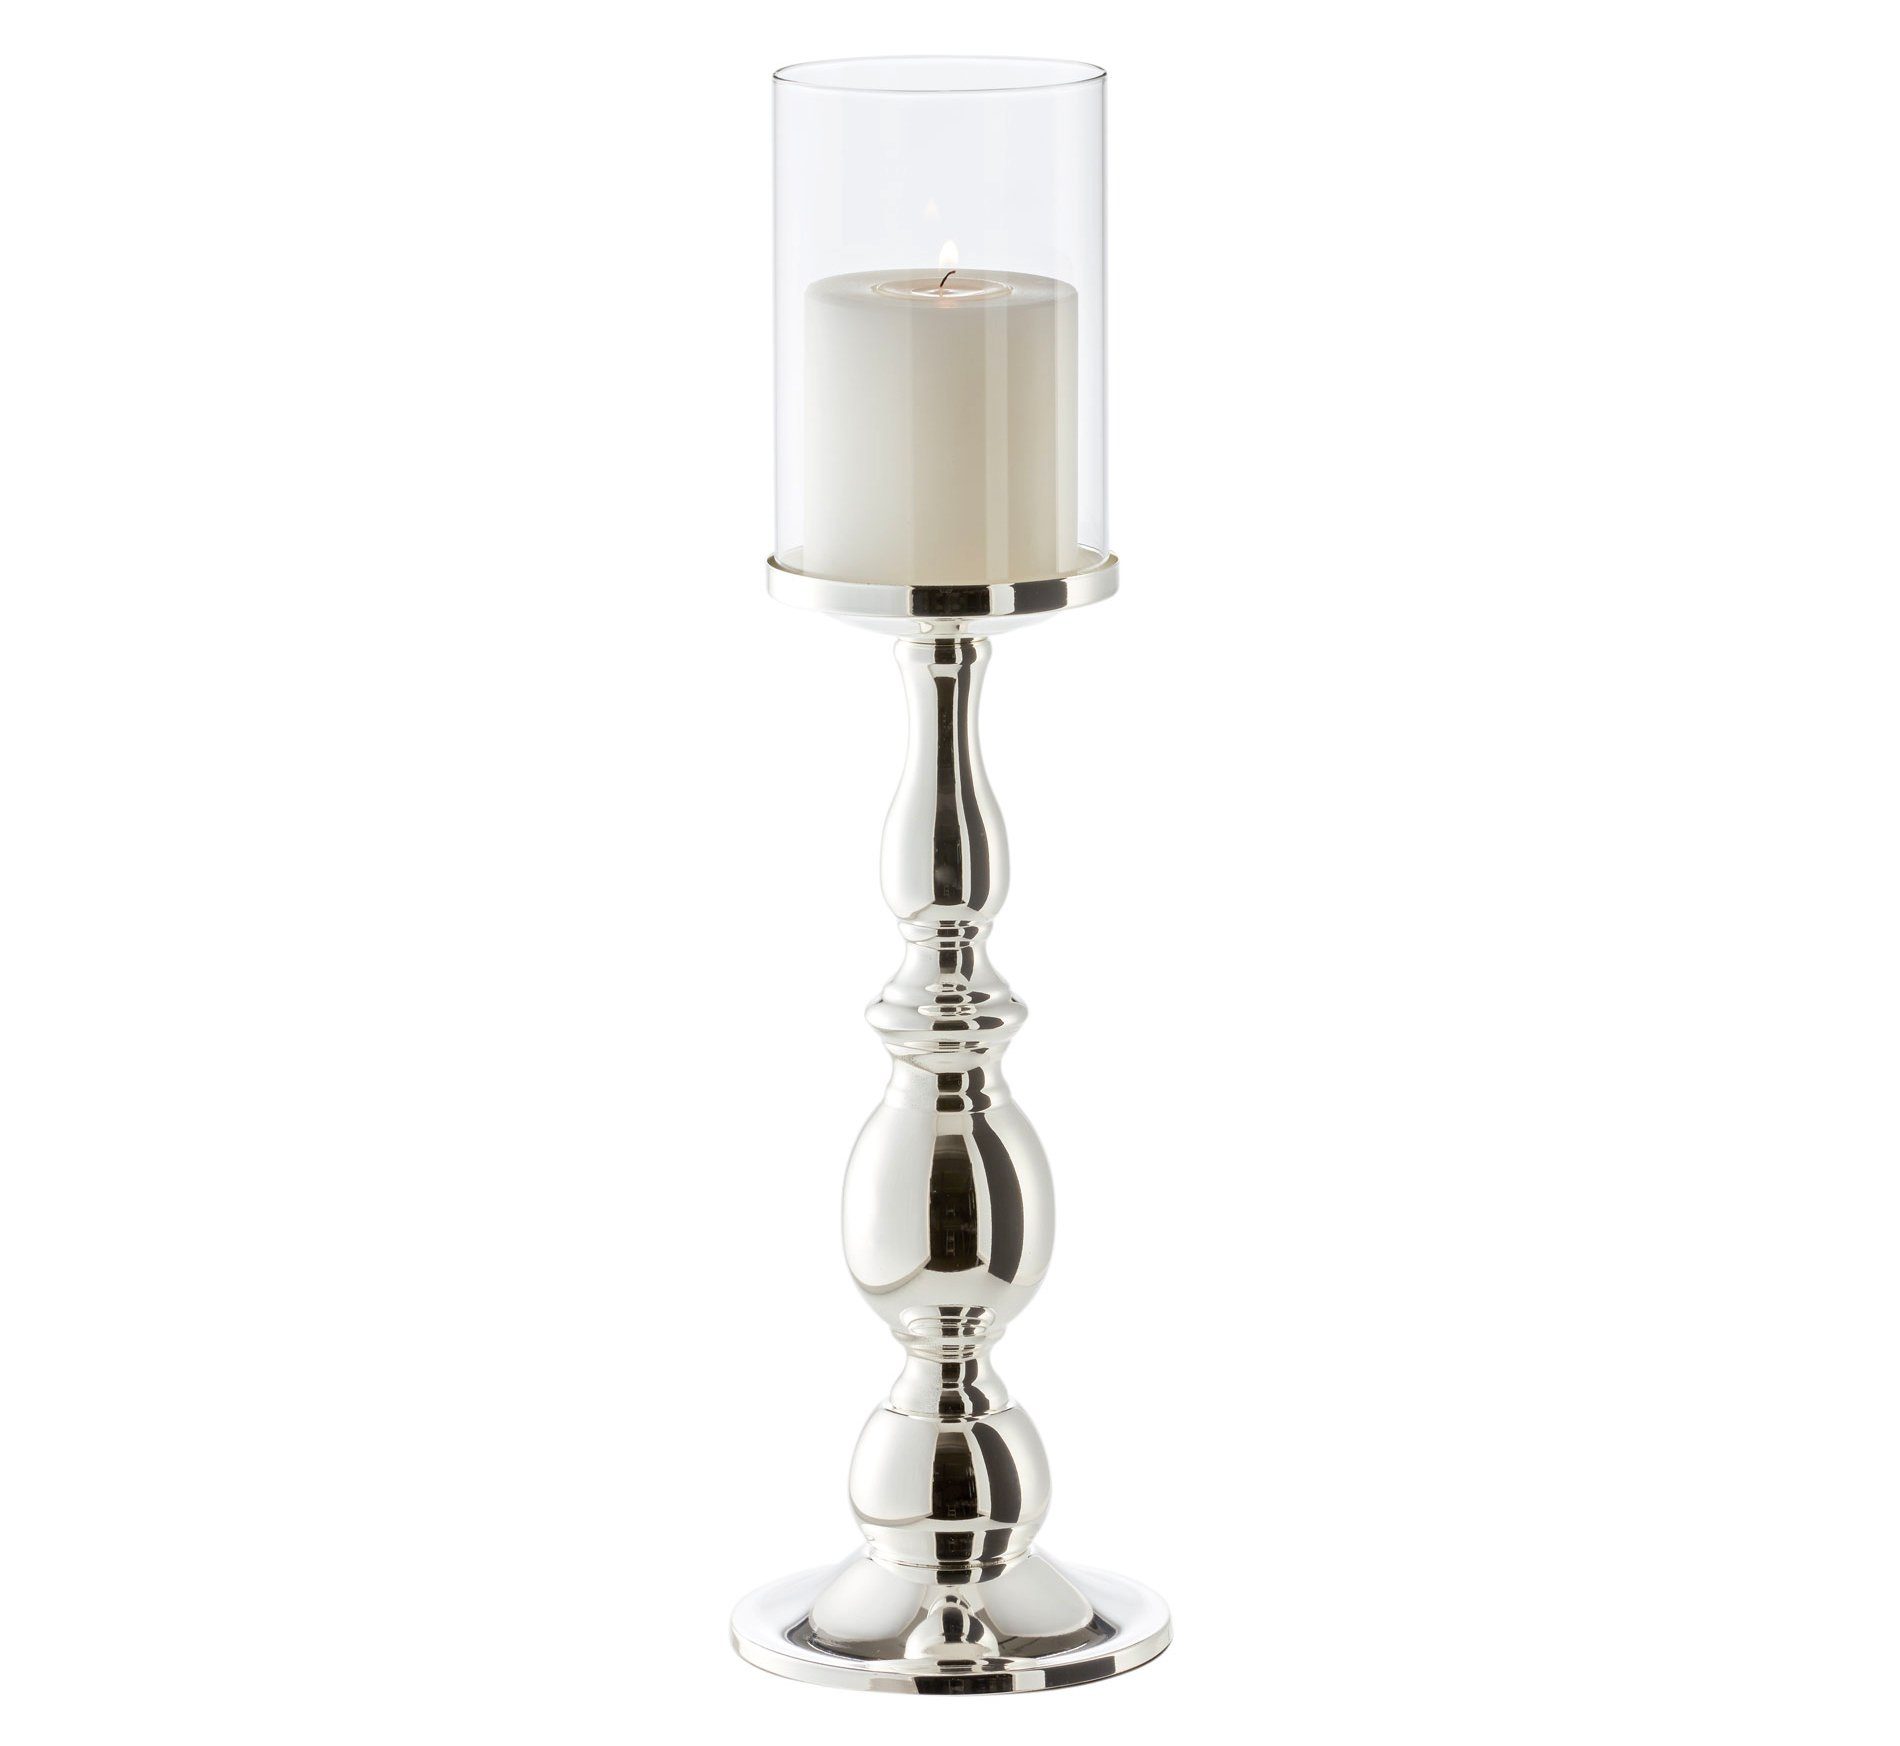 EDZARD Kerzenständer Mascha, Kerzenhalter für Stumpenkerzen, Kerzenleuchter im modernen Design, versilbert und anlaufgeschützt, Höhe 45 cm